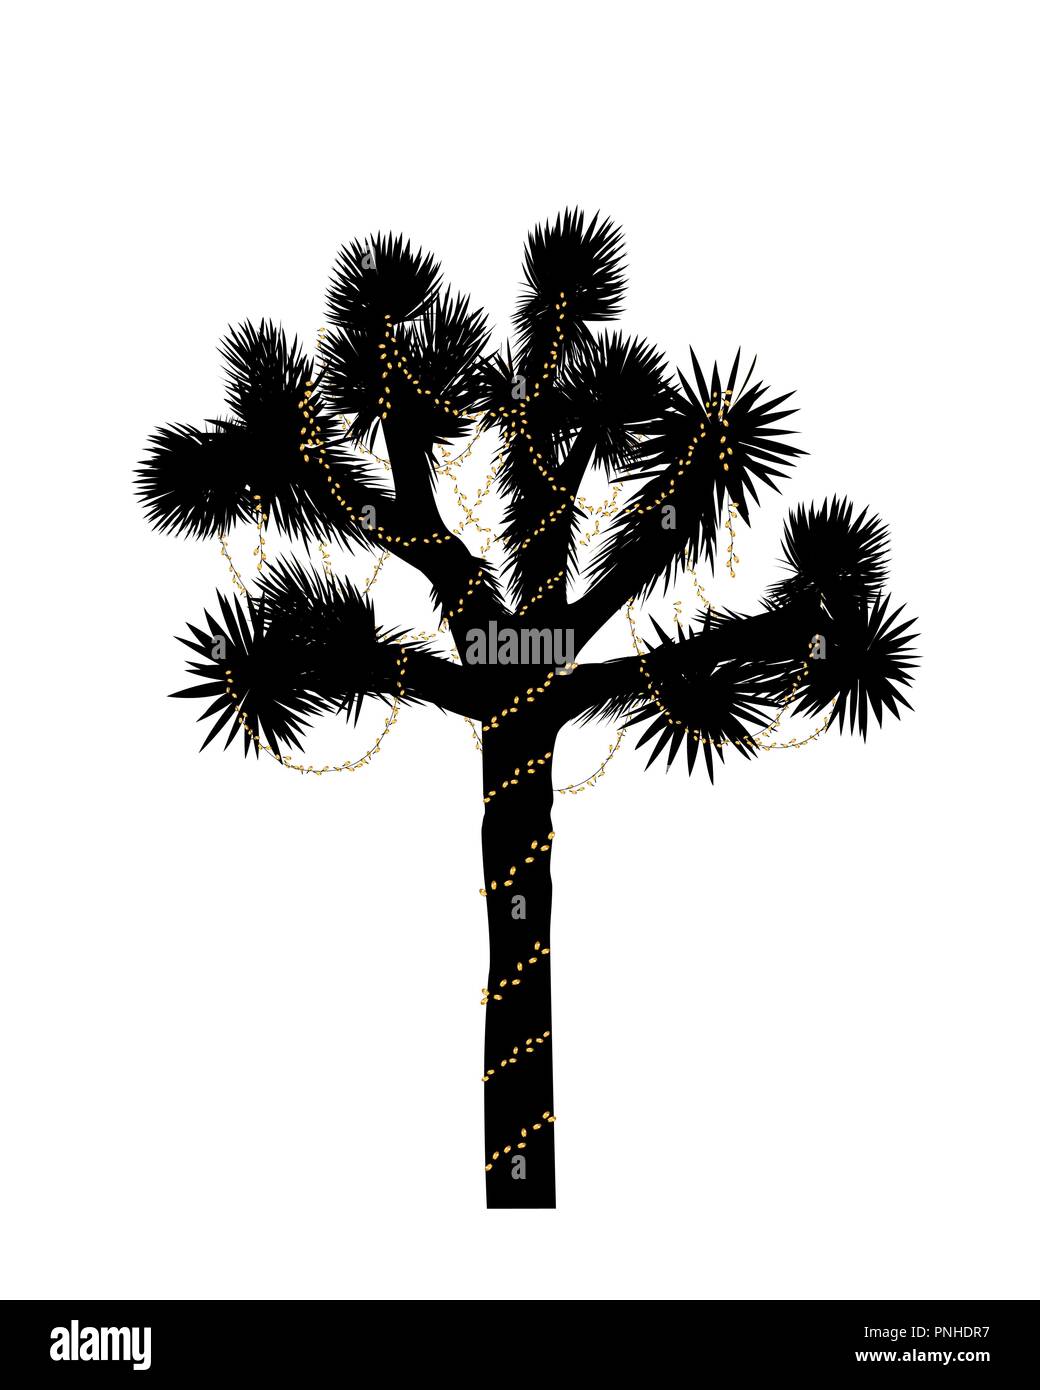 Joshua Tree silhouette mit Weihnachtsbeleuchtung dekoriert. Neues Jahr design Element. Vector Illustration Stock Vektor